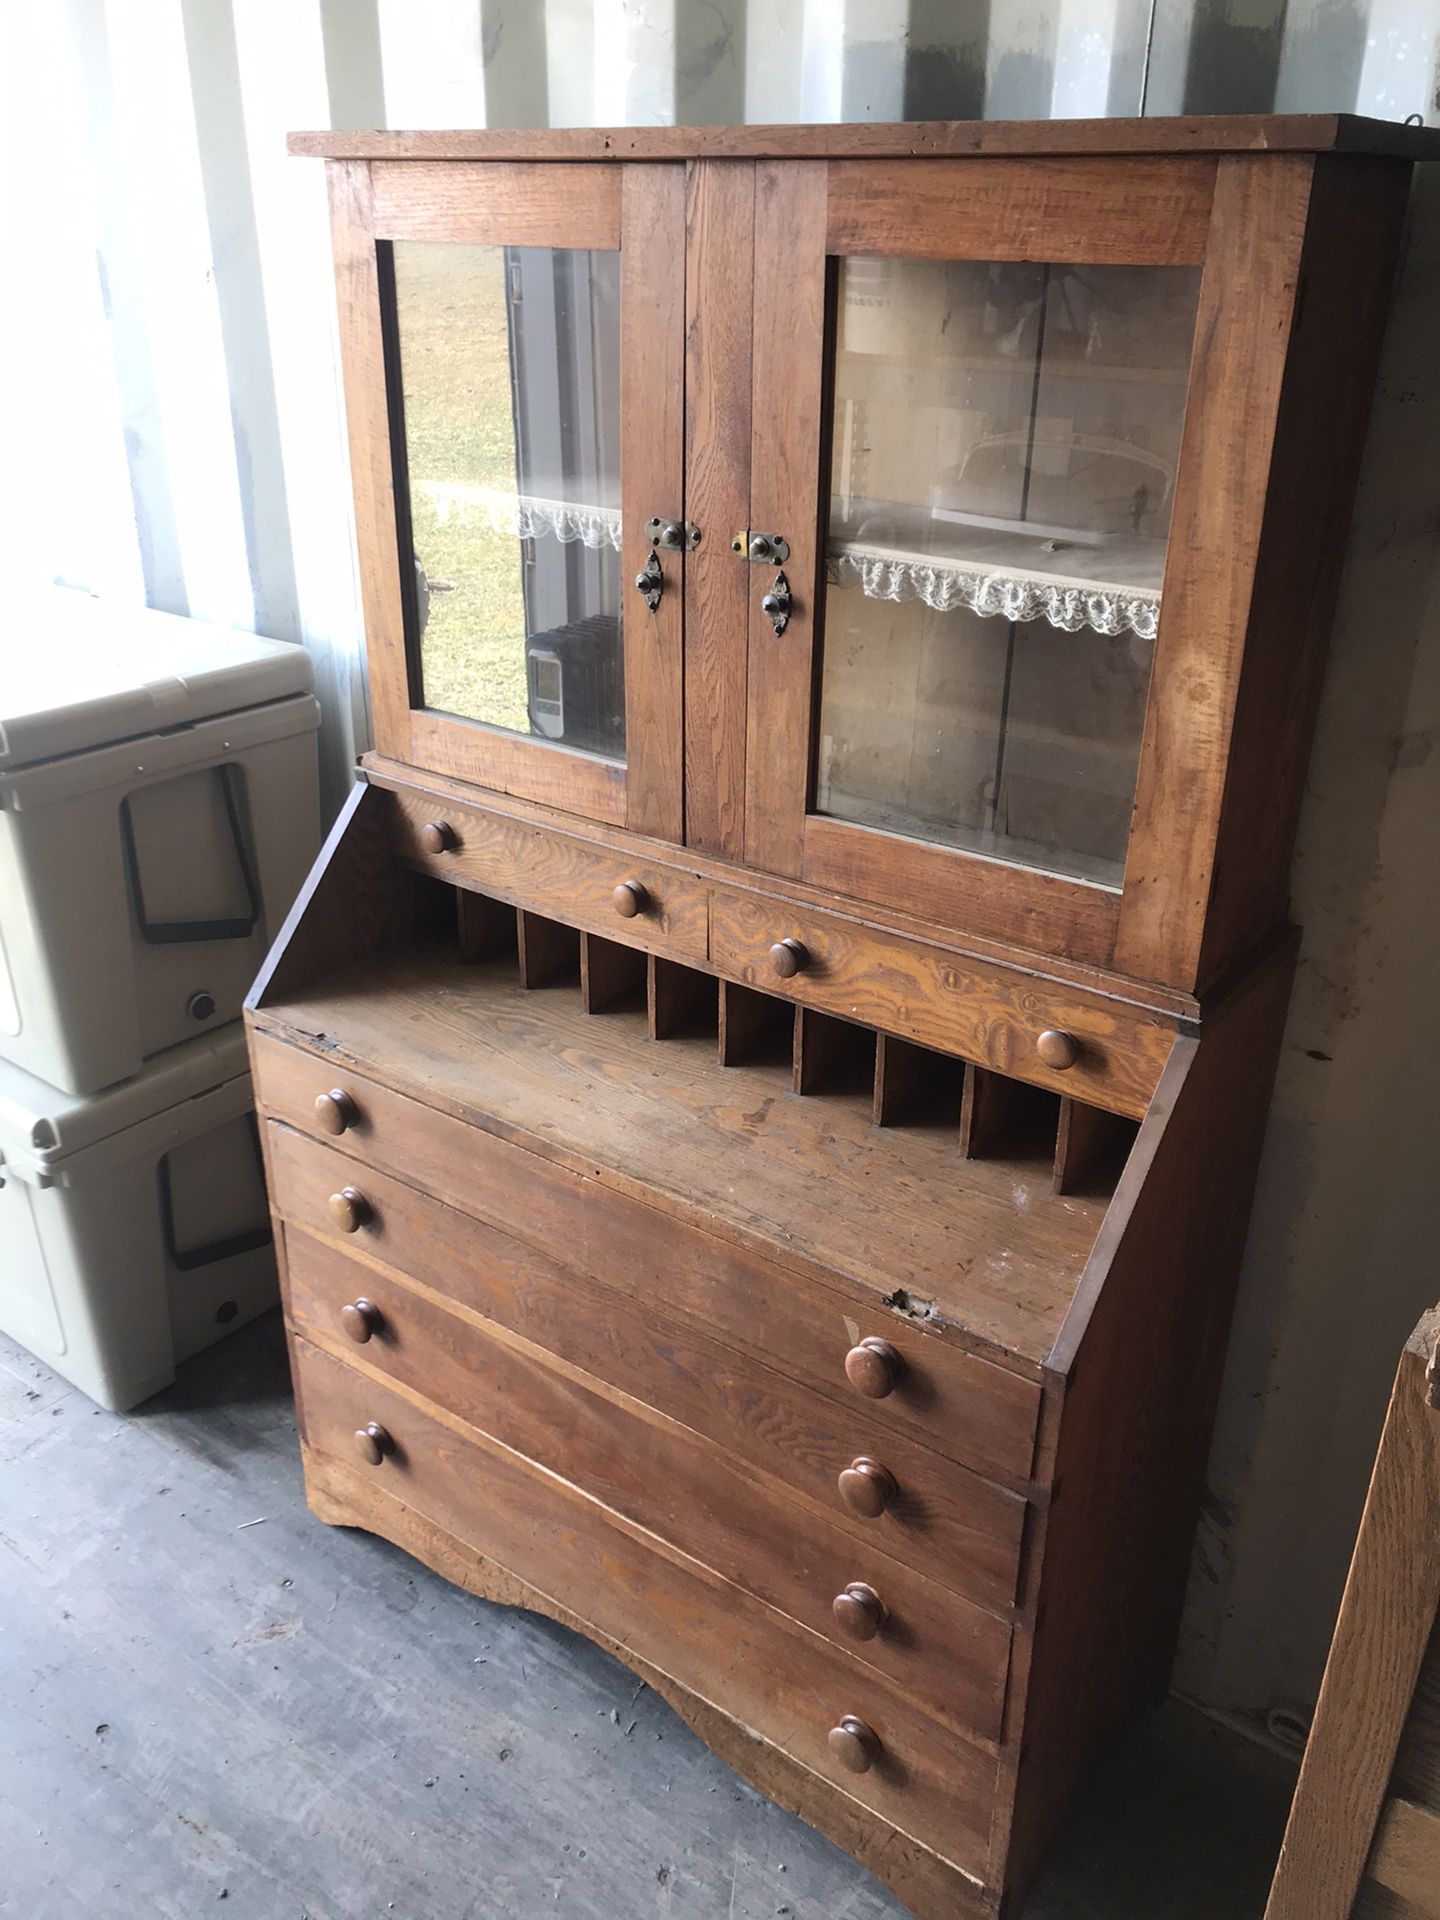 Antique Dresser / Hutch With Glass Door Top.